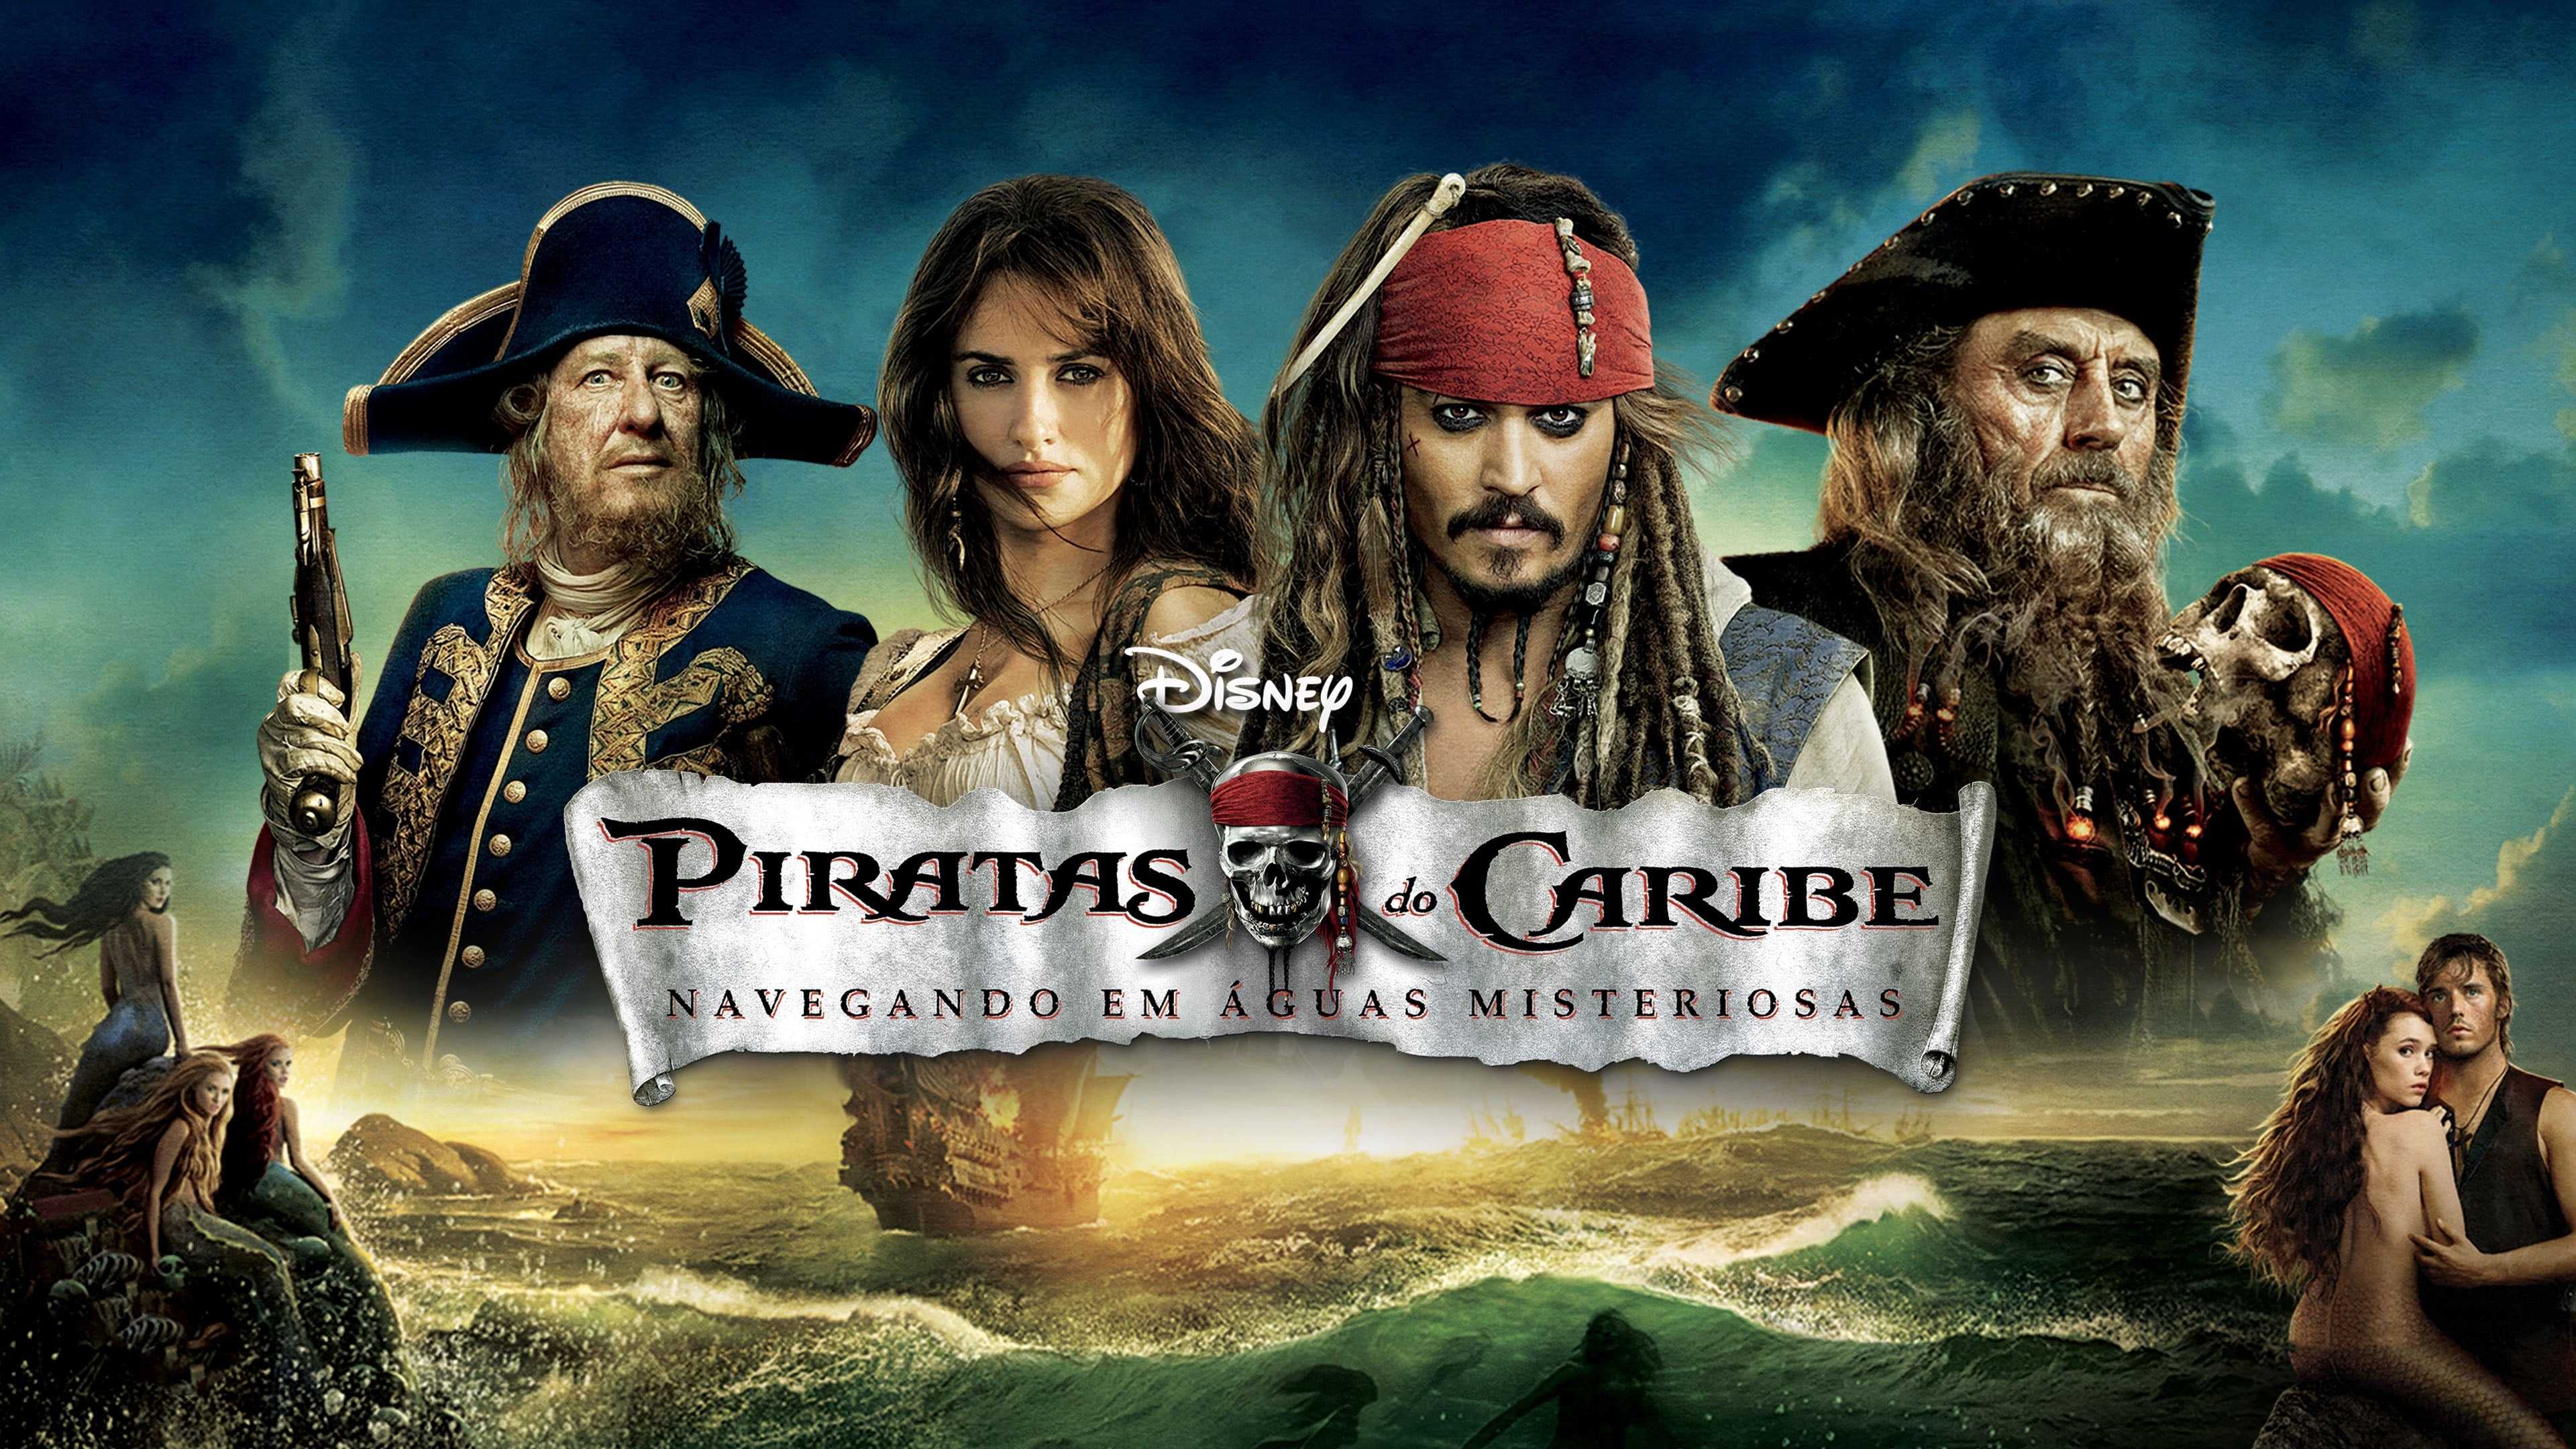 Включи пираты кариб. Пираты Карибского моря 4 на странных берегах. Pirates of the Caribbean нас таранных берегах.